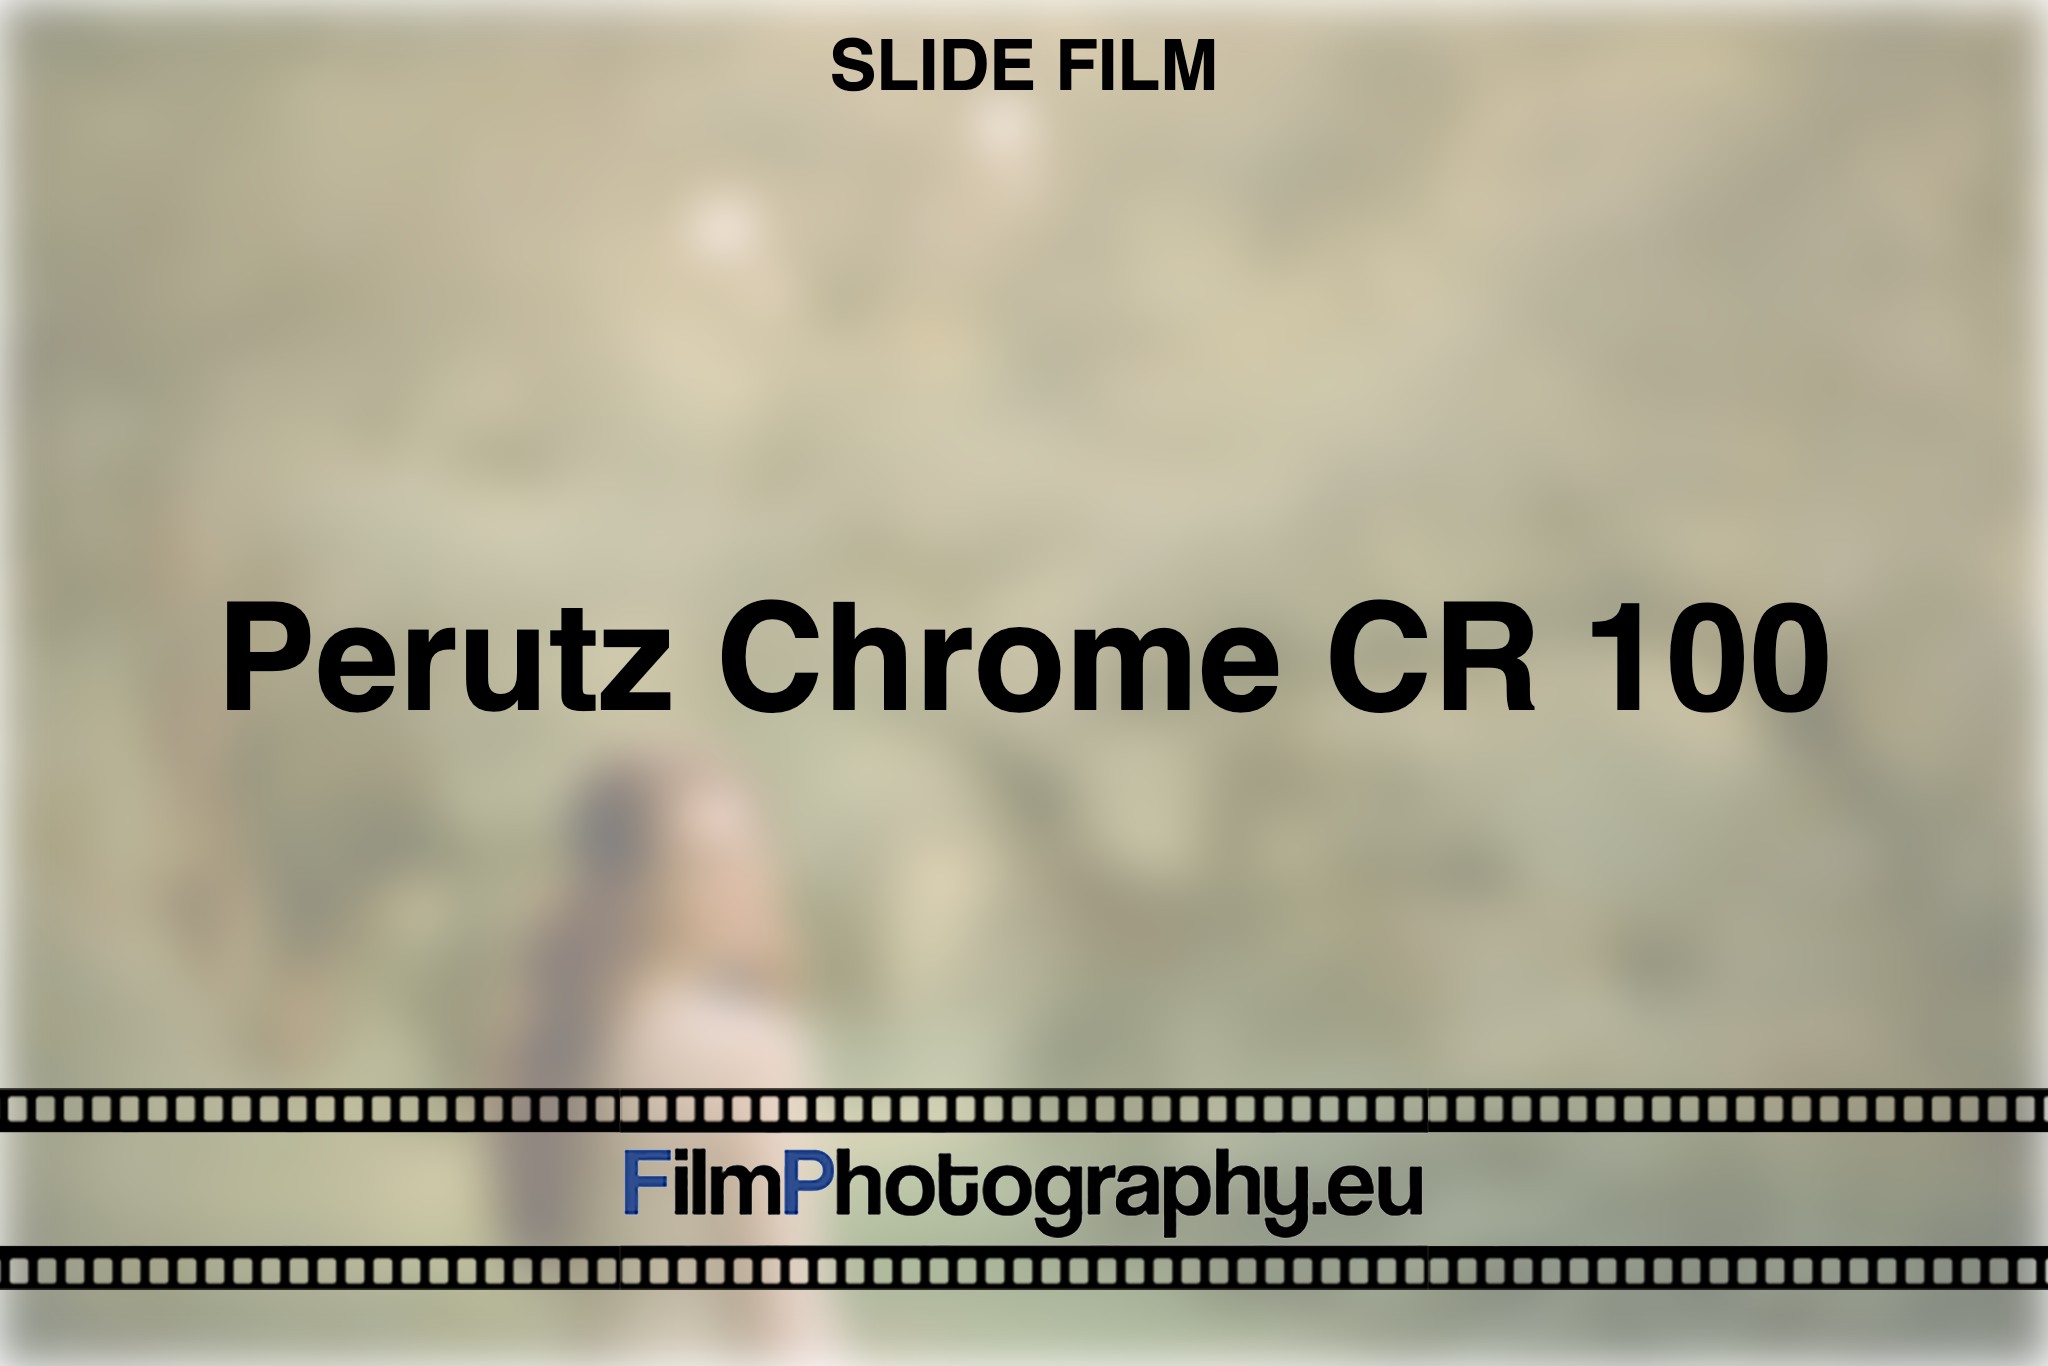 perutz-chrome-cr-100-slide-film-bnv